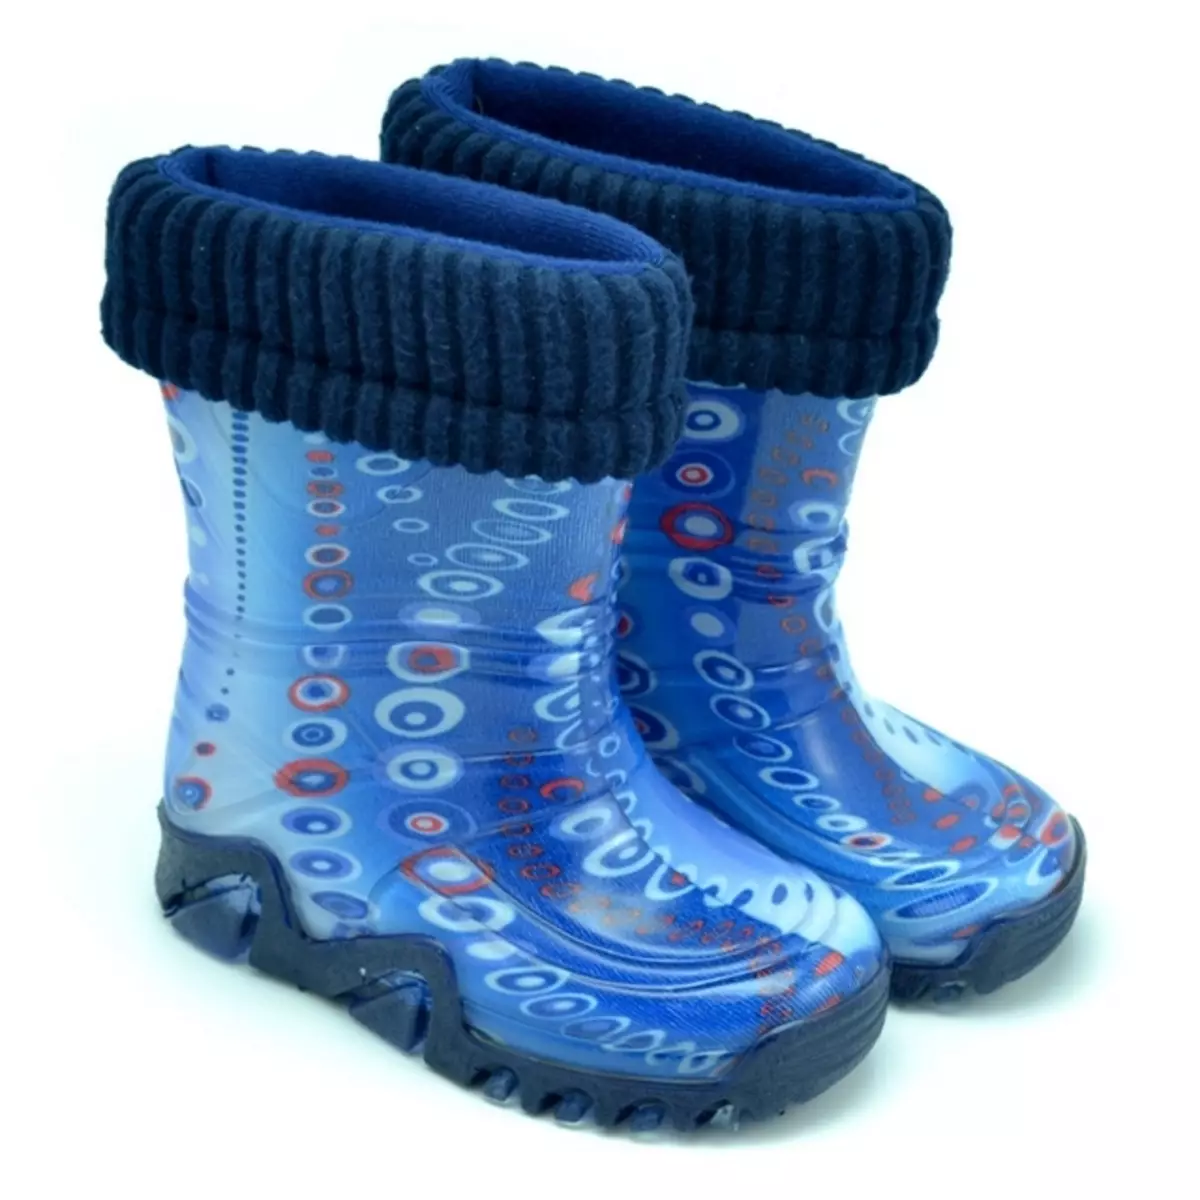 Lastik Boots Demar (67 Fotoğraf): Çocuk ayakkabısı, yalıtımlı modeller hakkında yorumlar 2236_61